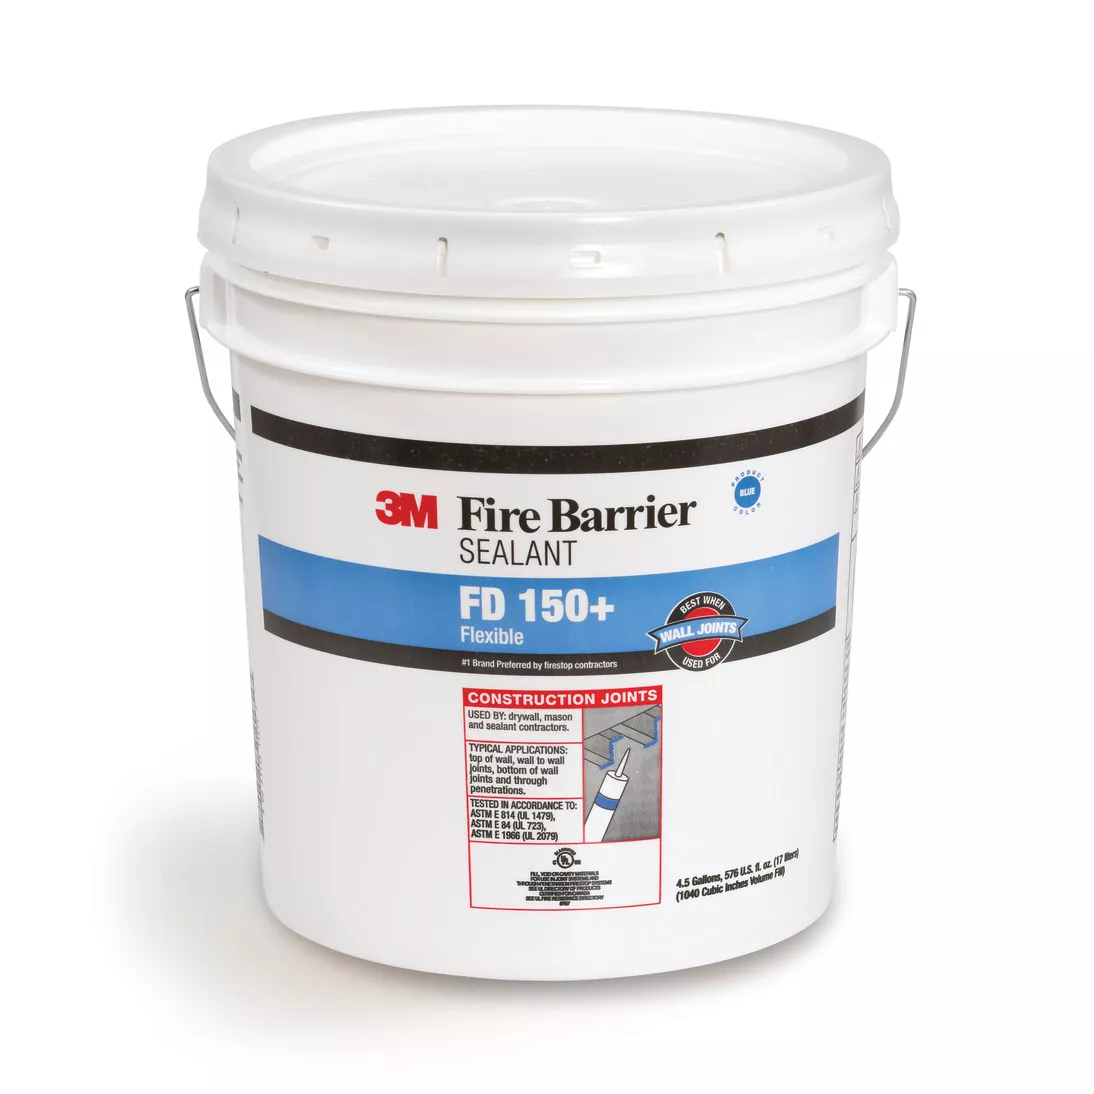 3M™ Fire Barrier Sealant FD 150+, Blue, 4.5 Gallon Drum (Pail)